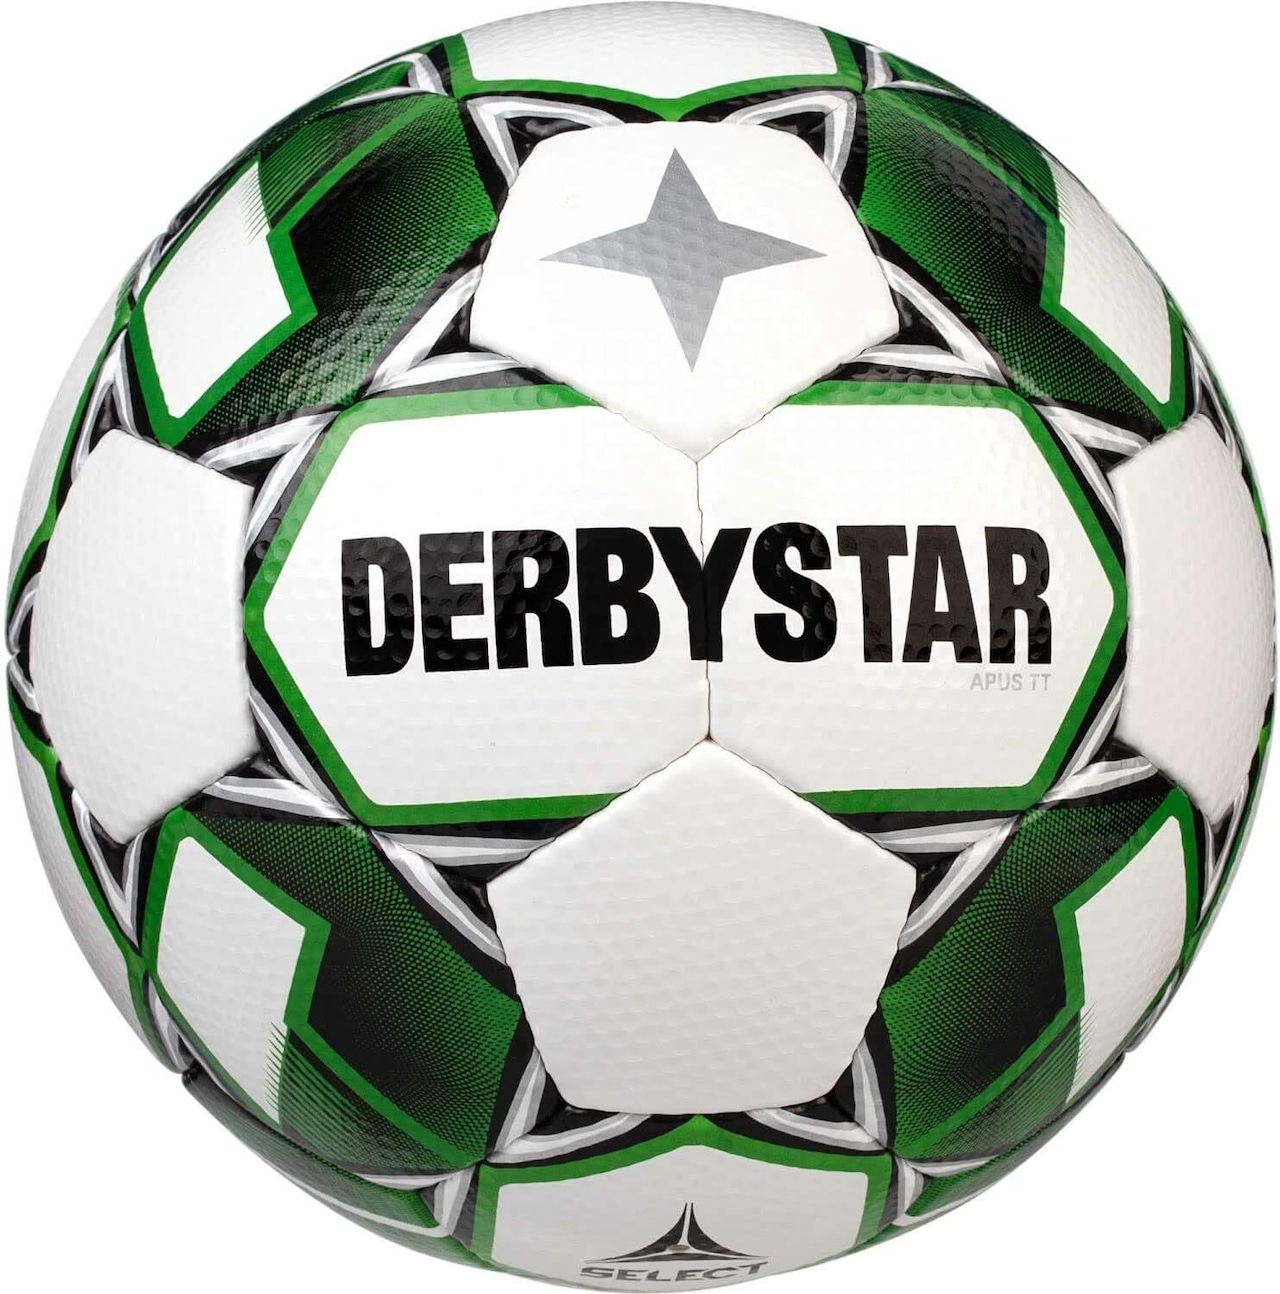 ダービースター(DERBYSTAR) サッカーボール 5号球 APUS(エイパス) TT IMS承認球 ホワイト/グリーン 中学生 高校生 社会人用